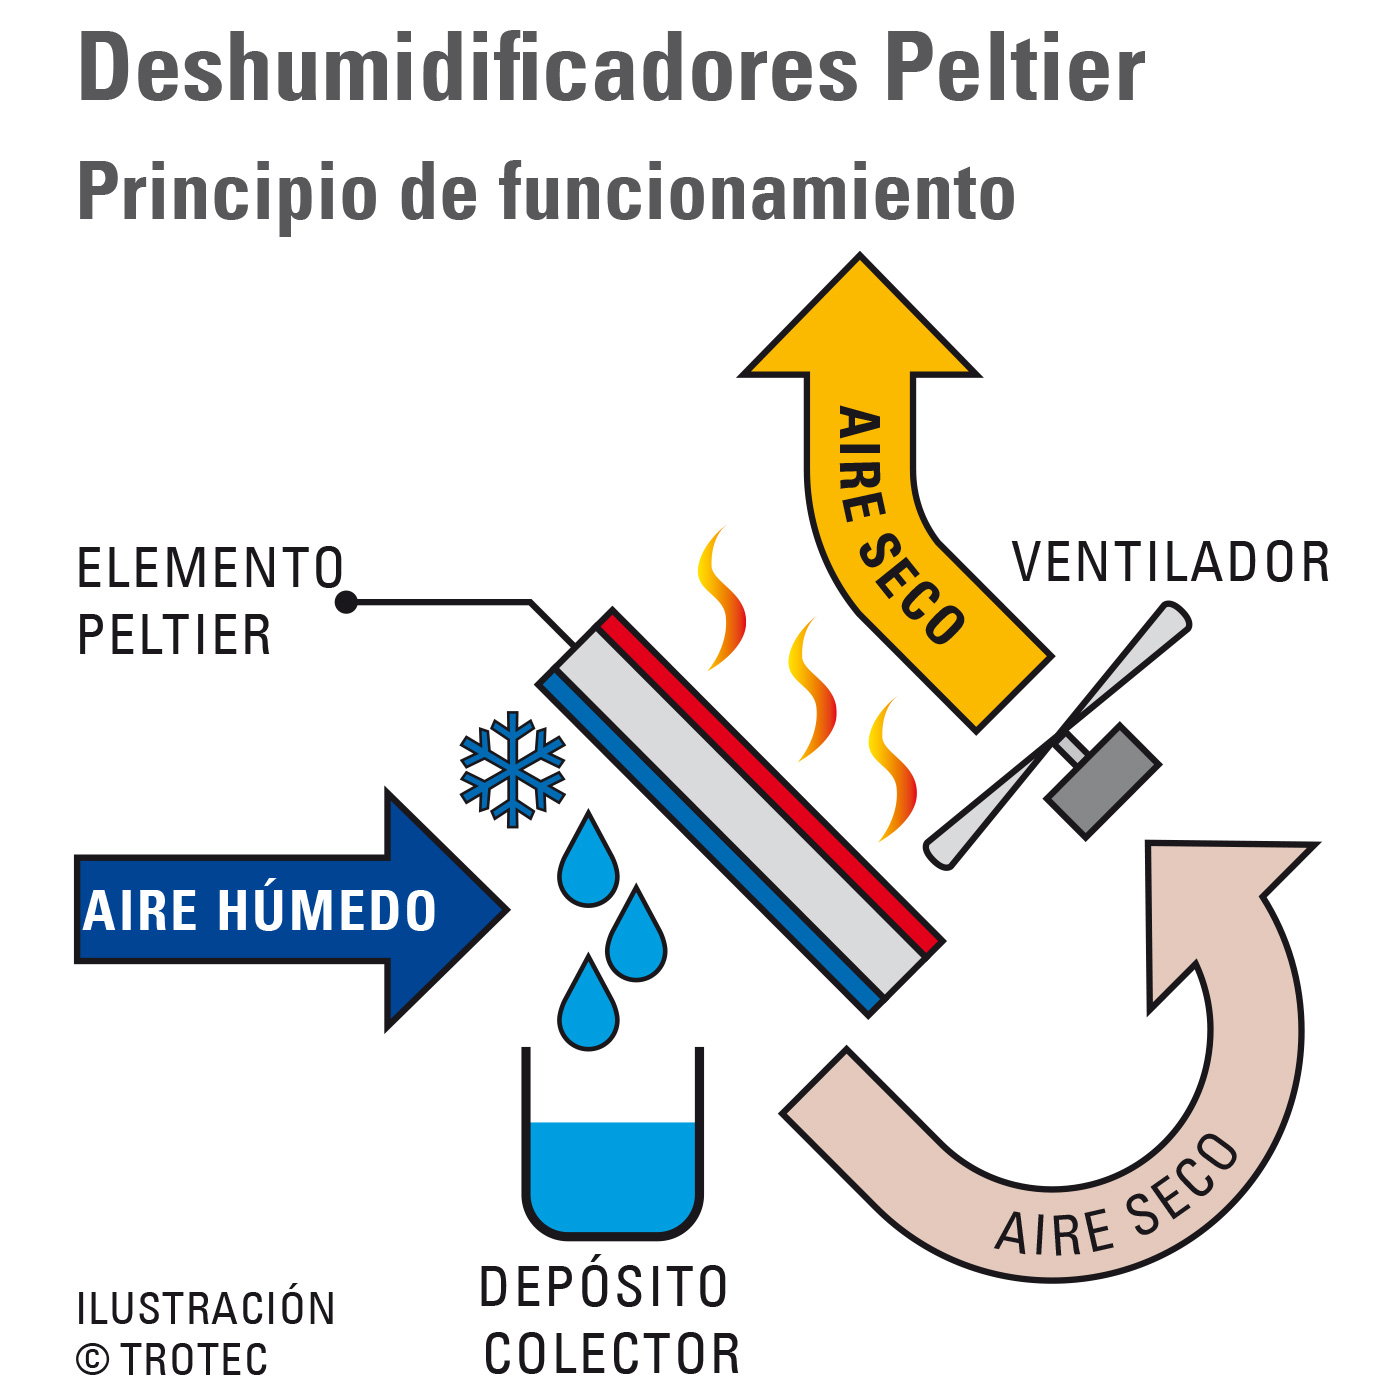 Principio de funcionamiento de los deshumidificadores Peltier